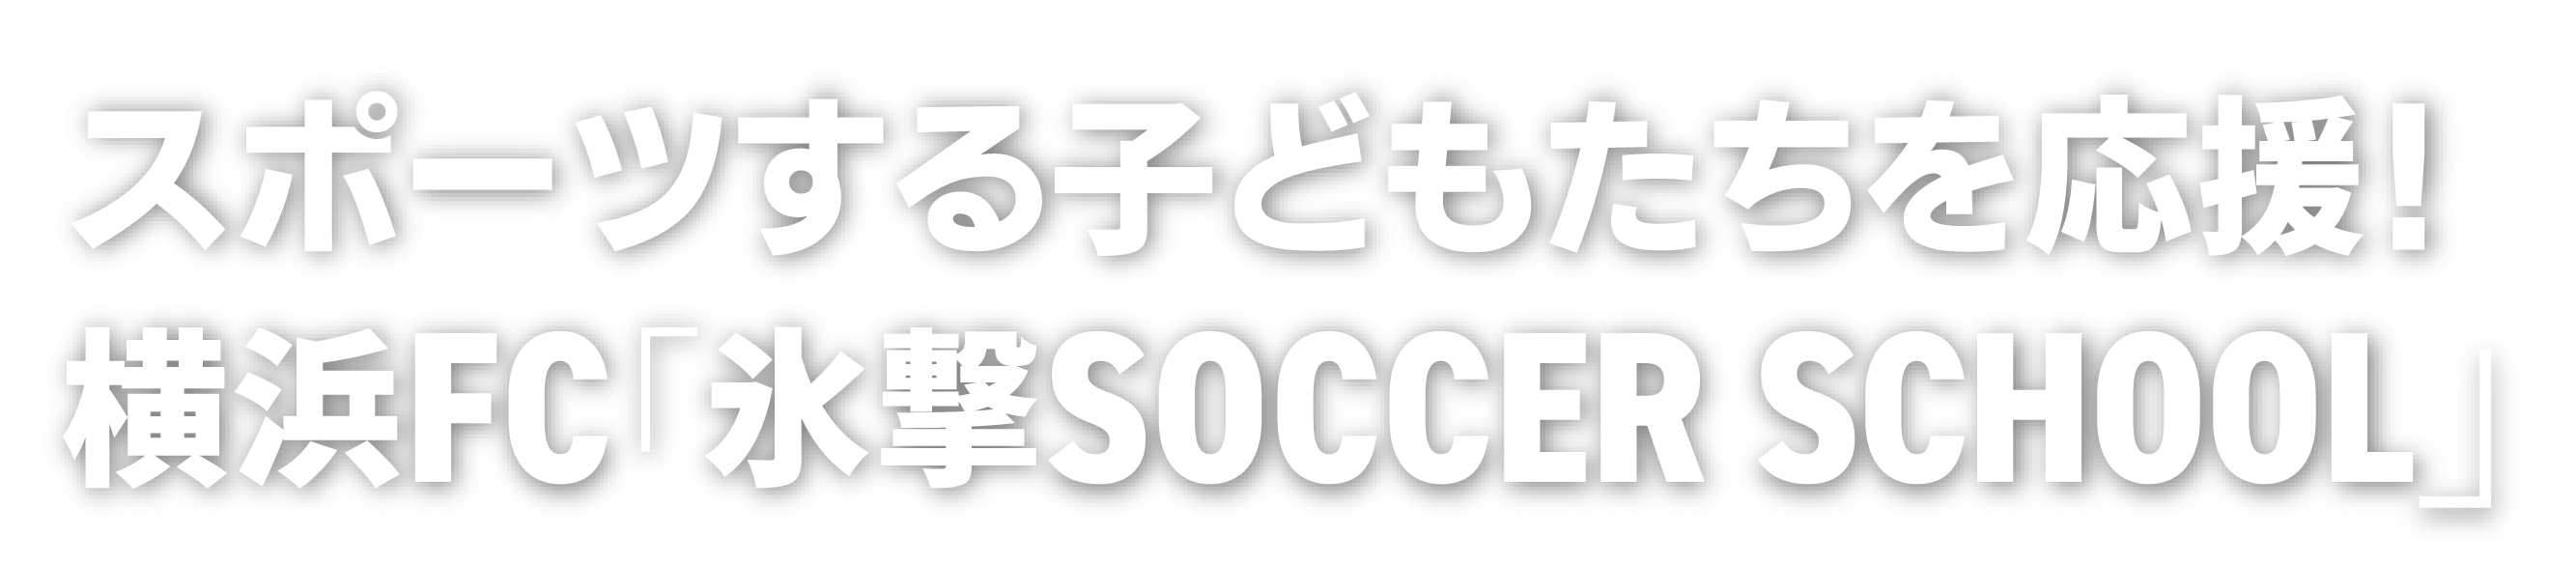 スポーツする子どもたちを応援！横浜FC「氷撃SOCCER SCHOOL」